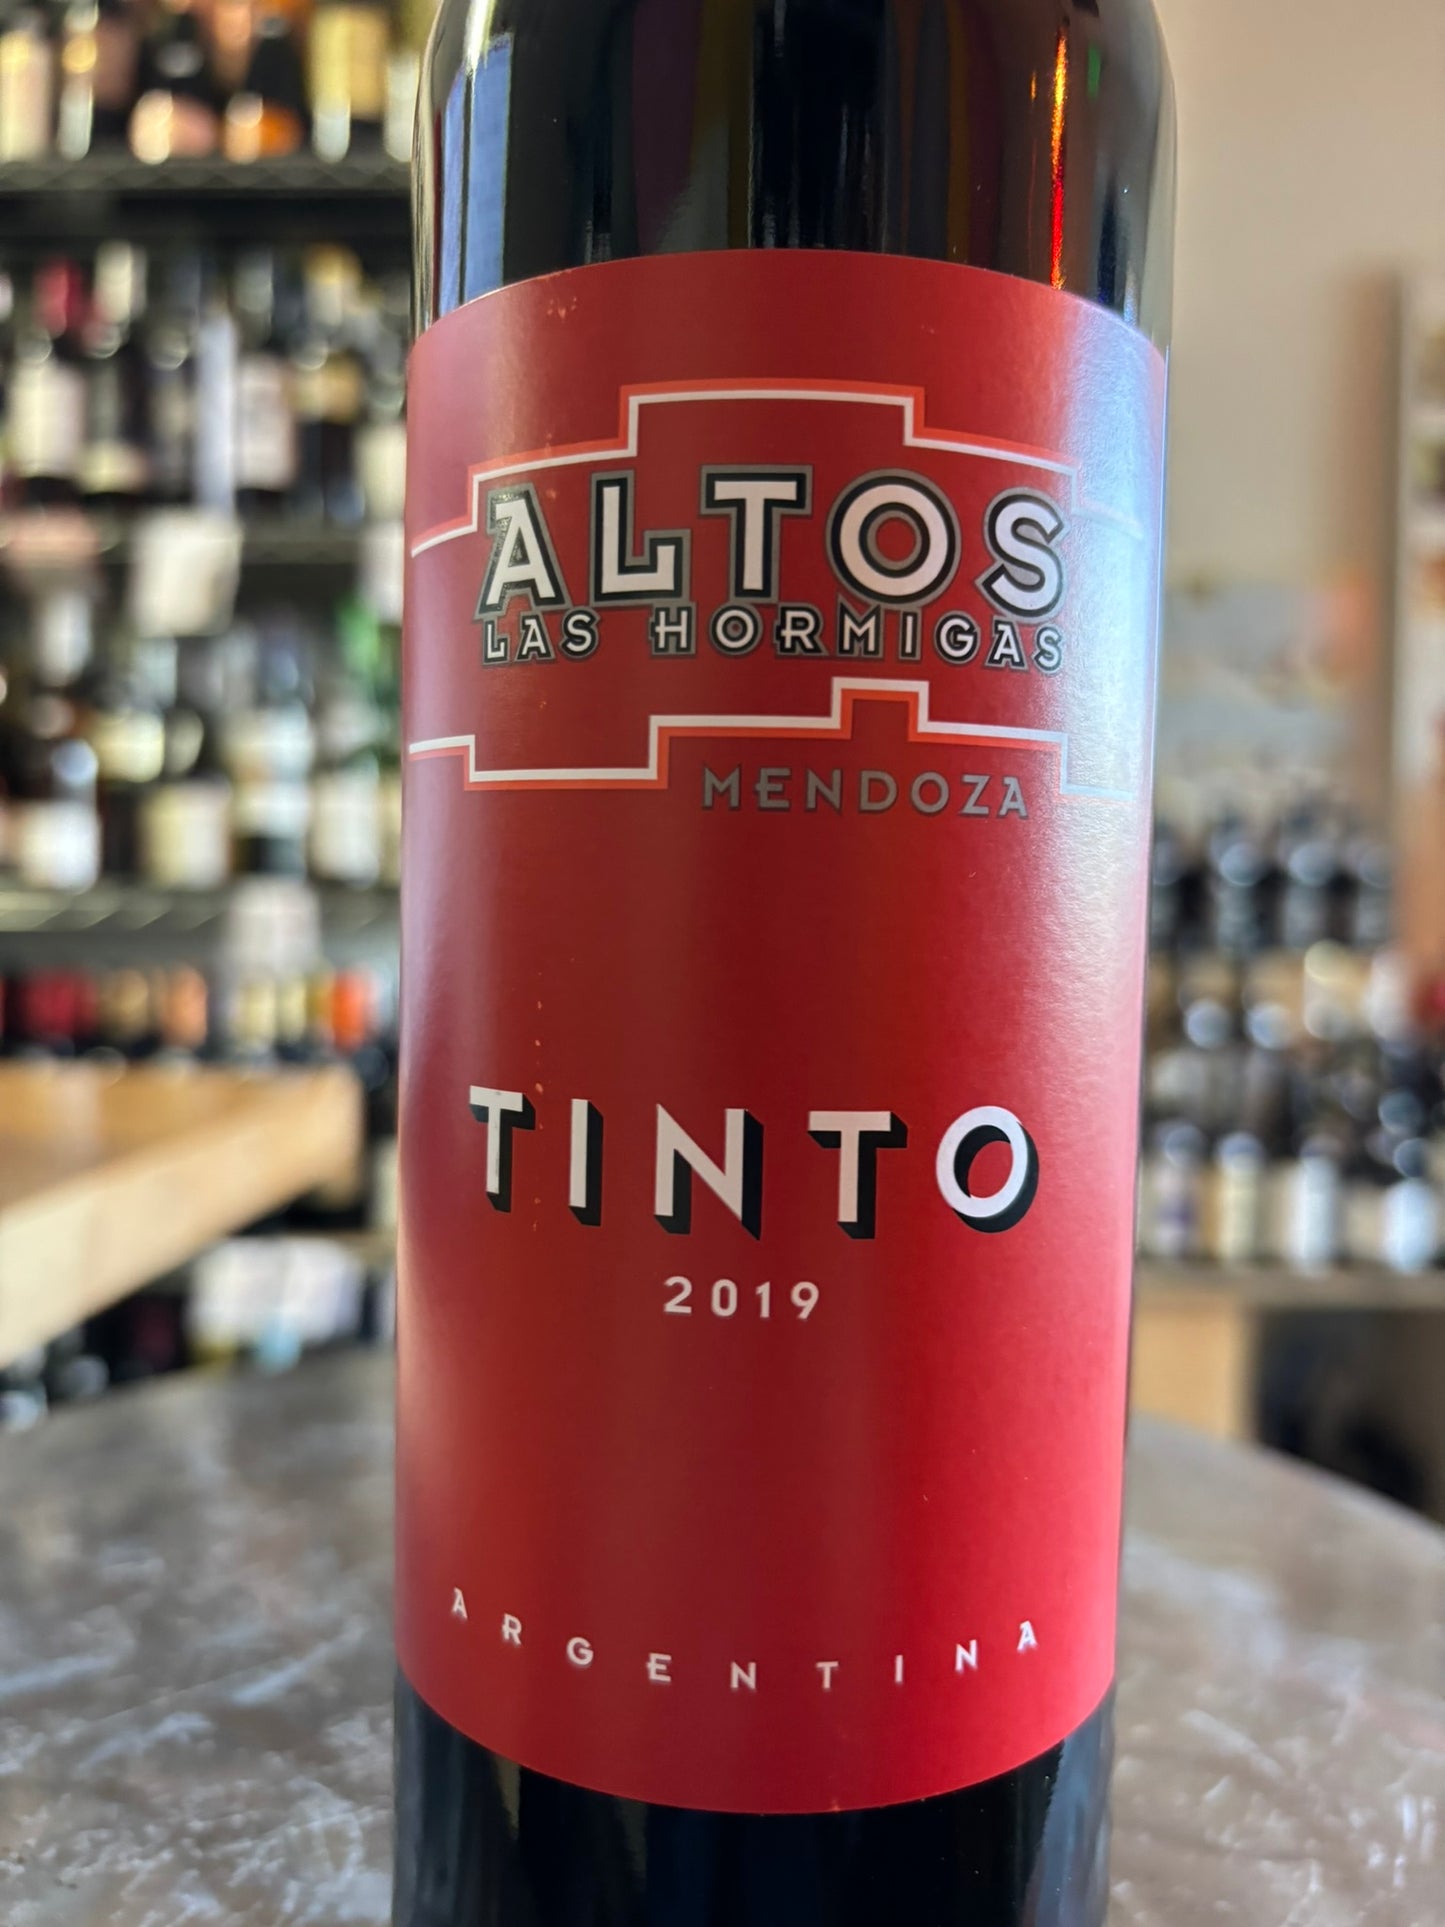 ALTOS LAS HORMIGAS 2019 Tinto (Mendoza, Argentina)